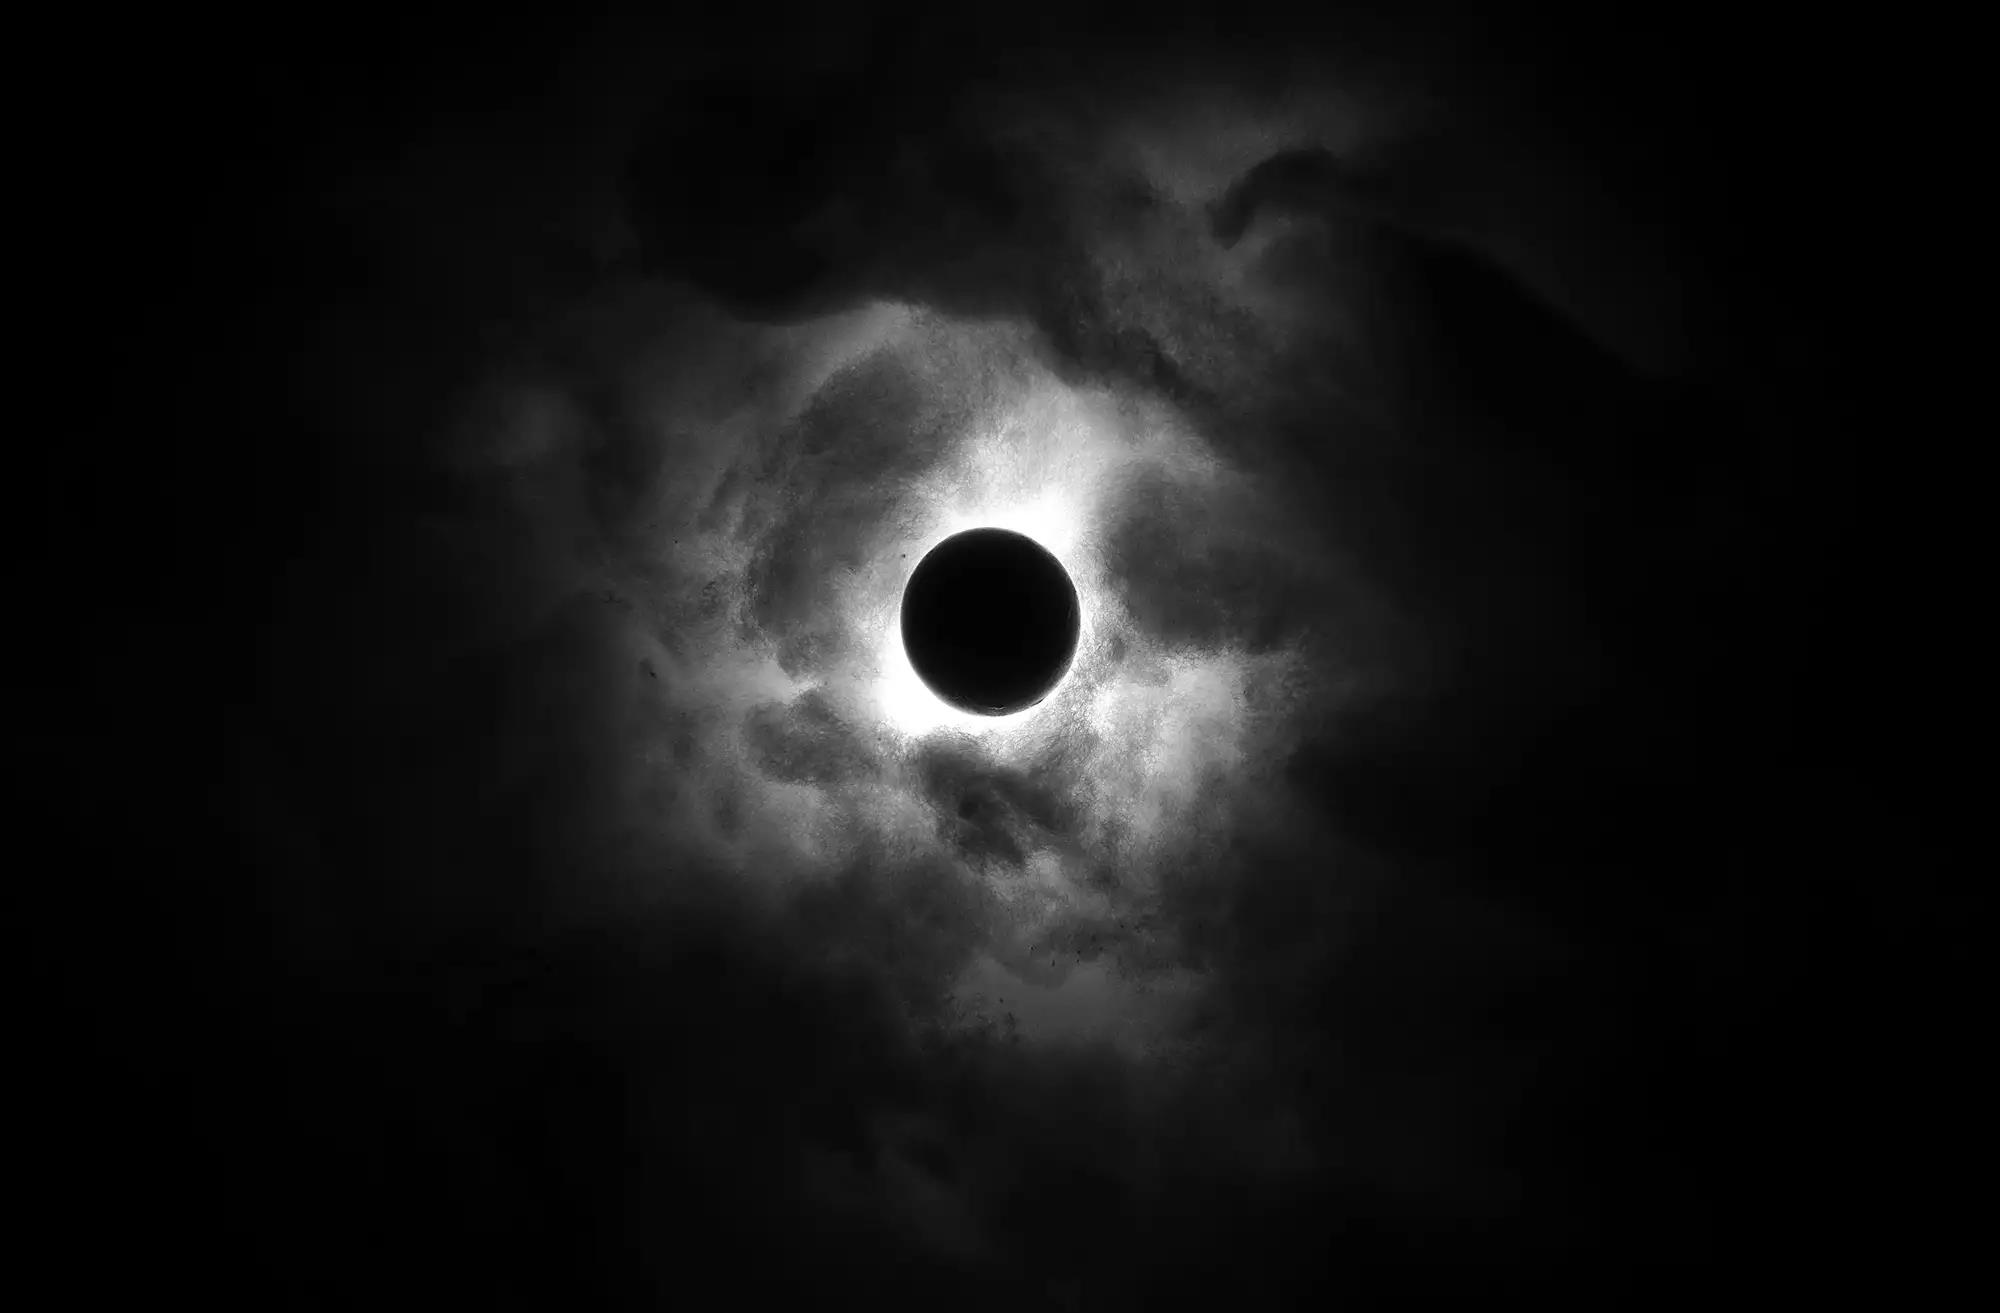 Mặt Trăng Đen là một biểu tượng của sự bí ẩn, sự đặc biệt và sự vĩnh cửu. Hãy truy cập vào hình ảnh liên quan và khám phá những ngọn núi đen, những vách đá đen kịch tính và không khí đợi chờ chết chóc của không gian đen trên màn hình của bạn.